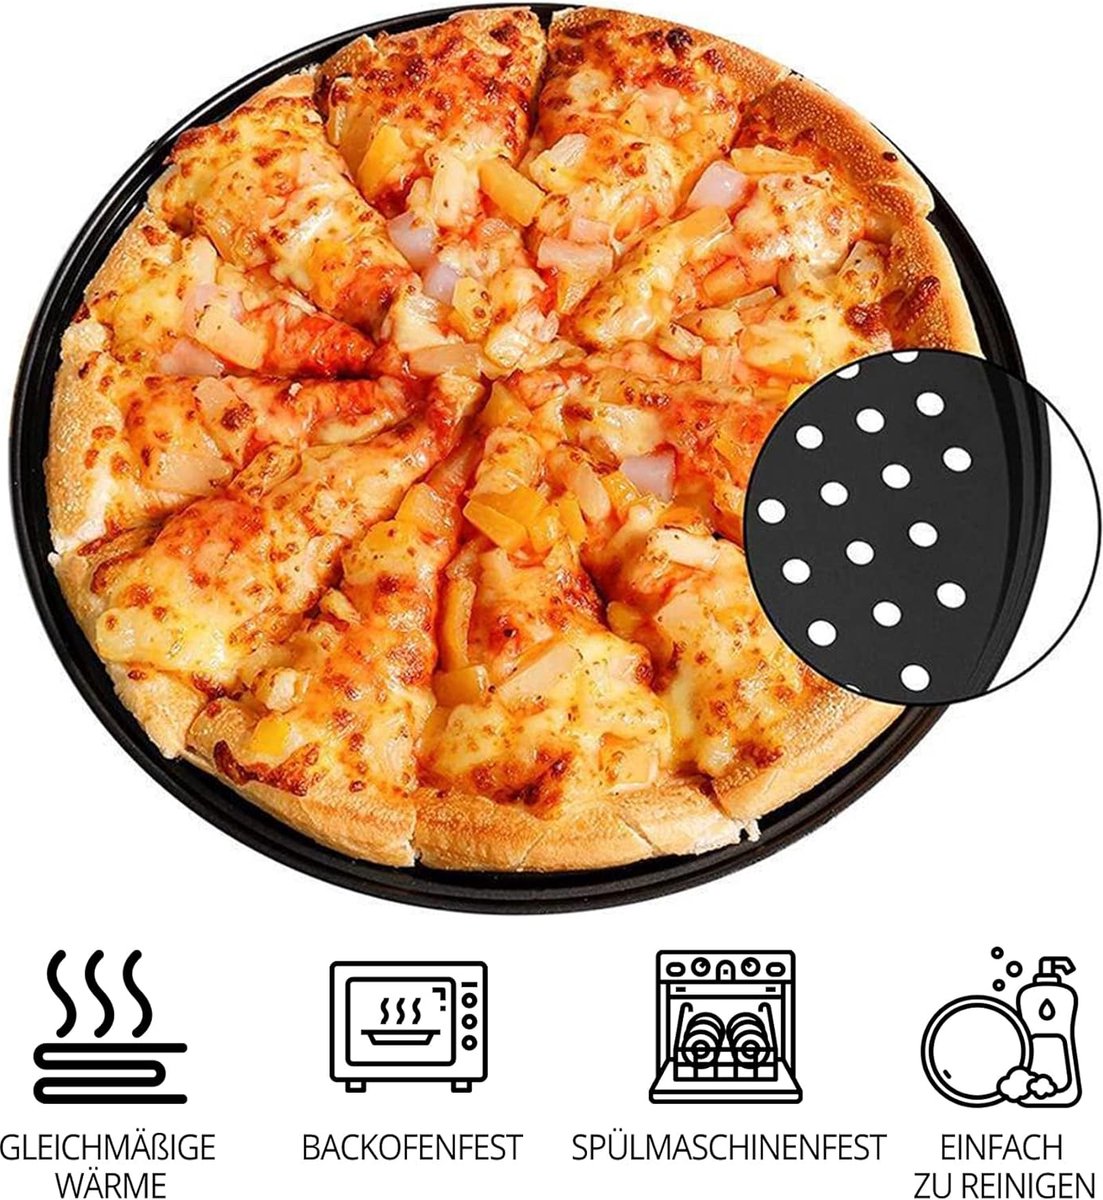 32 cm ronde pizzaplaat van koolstofstaal met gaten voor pizza & tarte flambée, geperforeerd, & anti-aanbakplaat veelzijdig ∅ 32 cm gemaakt van staal, pizza-bakplaat met anti-aanbaklaag